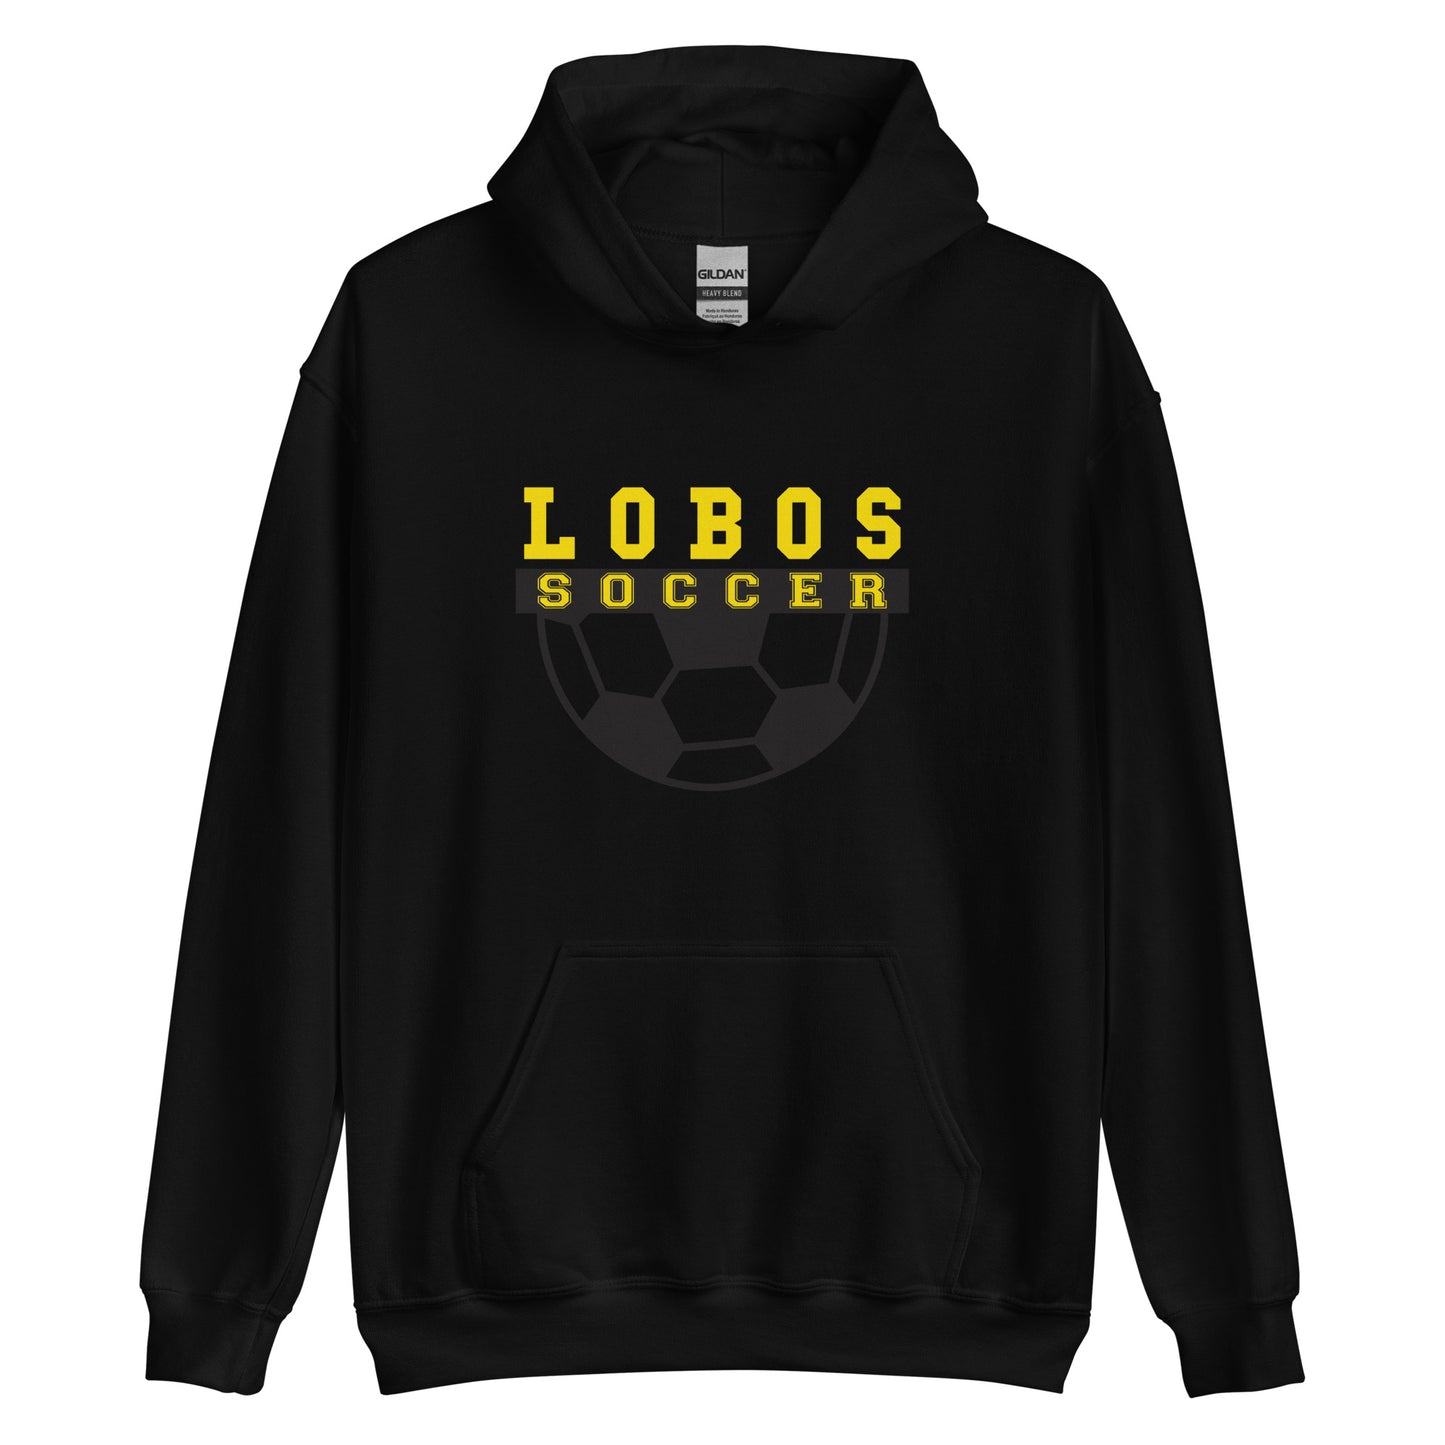 Lobos Soccer Unisex Hoodie